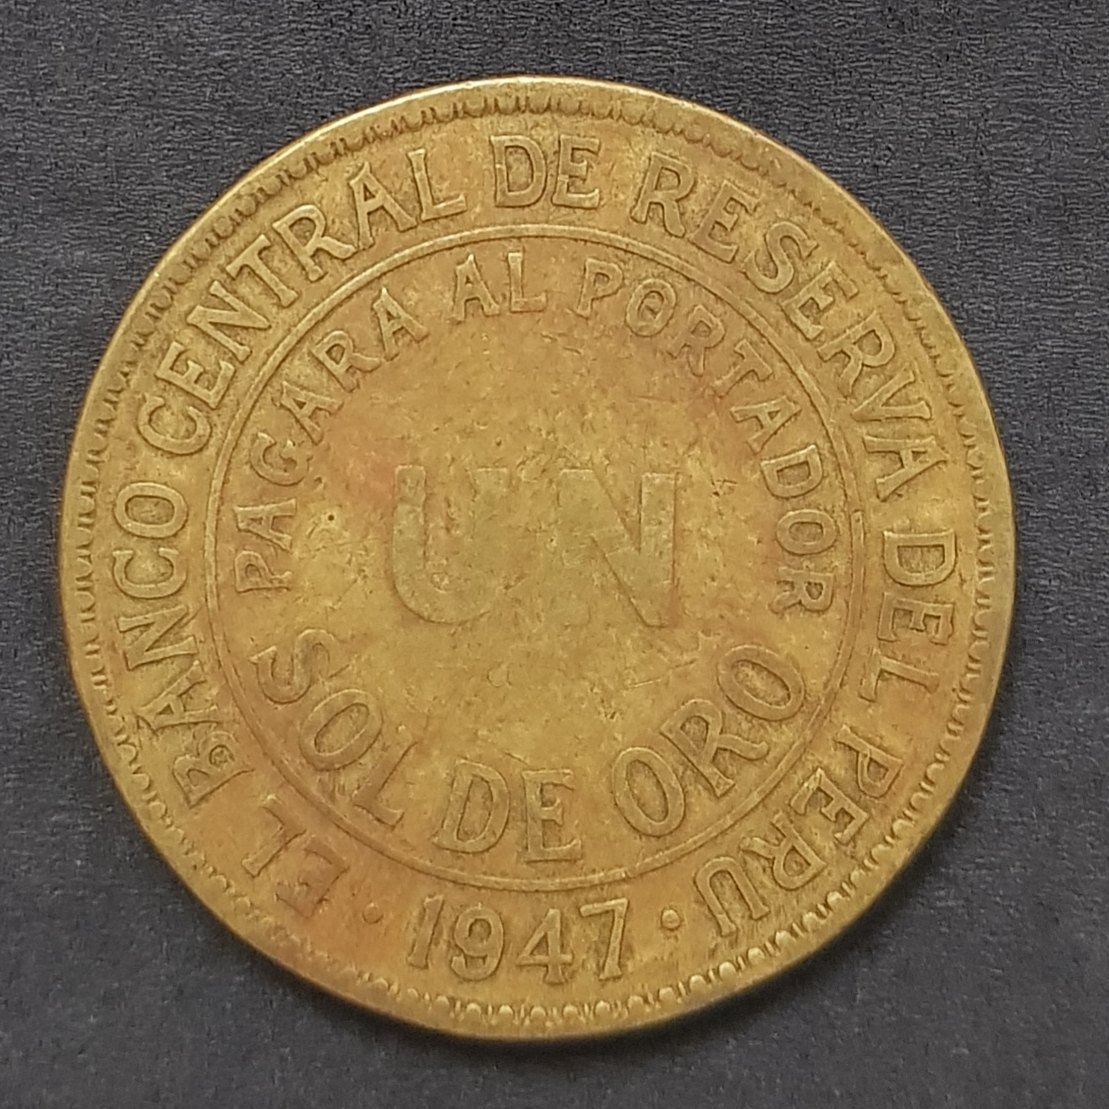  Peru 1 Sol 1947  #537   